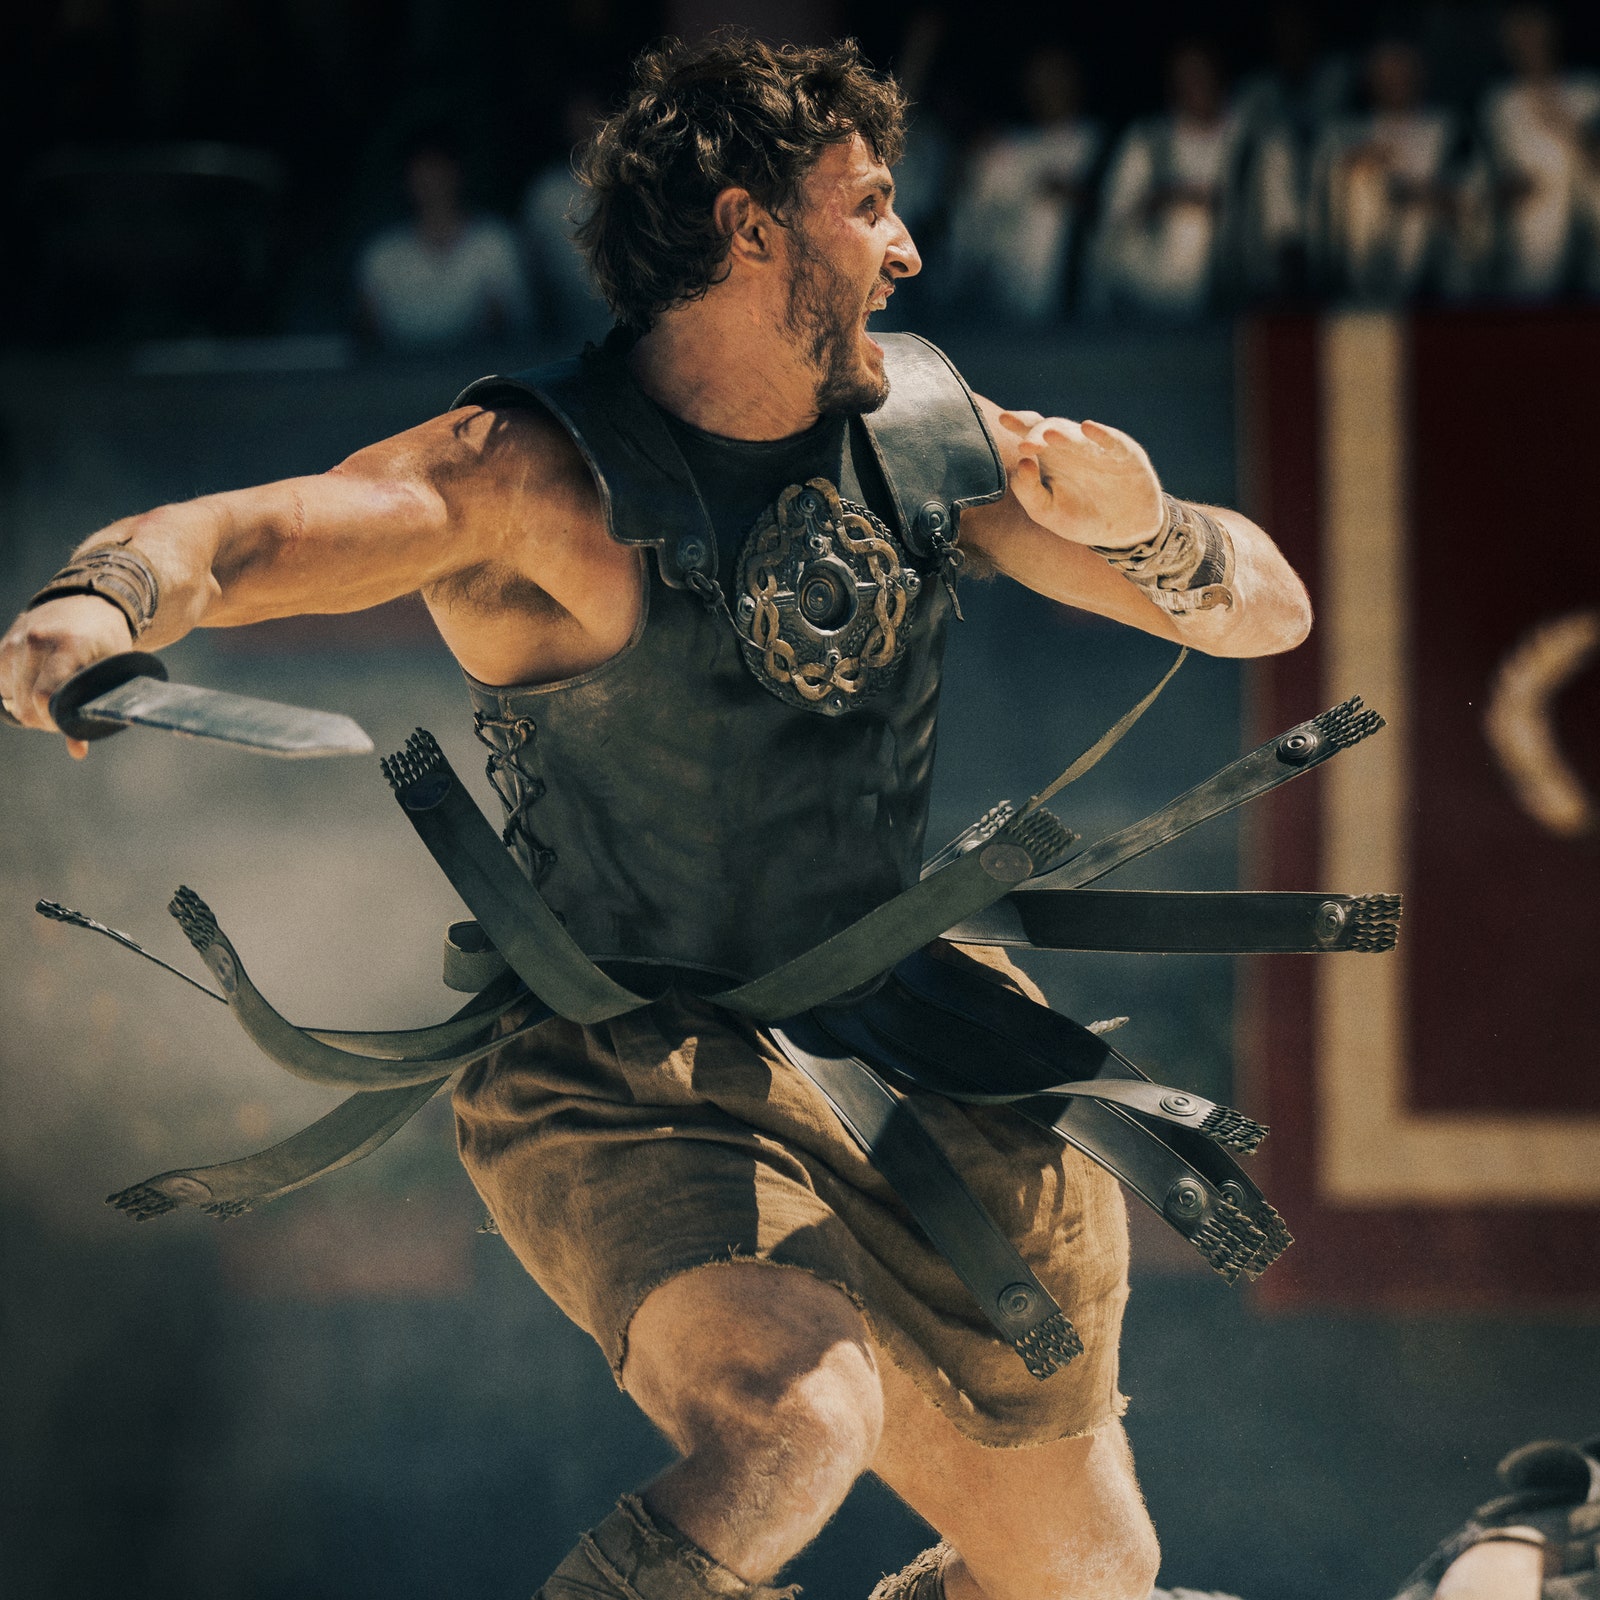 Il Gladiatore 2 promette sangue, arena e sogni di gloria. Guarda qui il trailer e le prime immagini